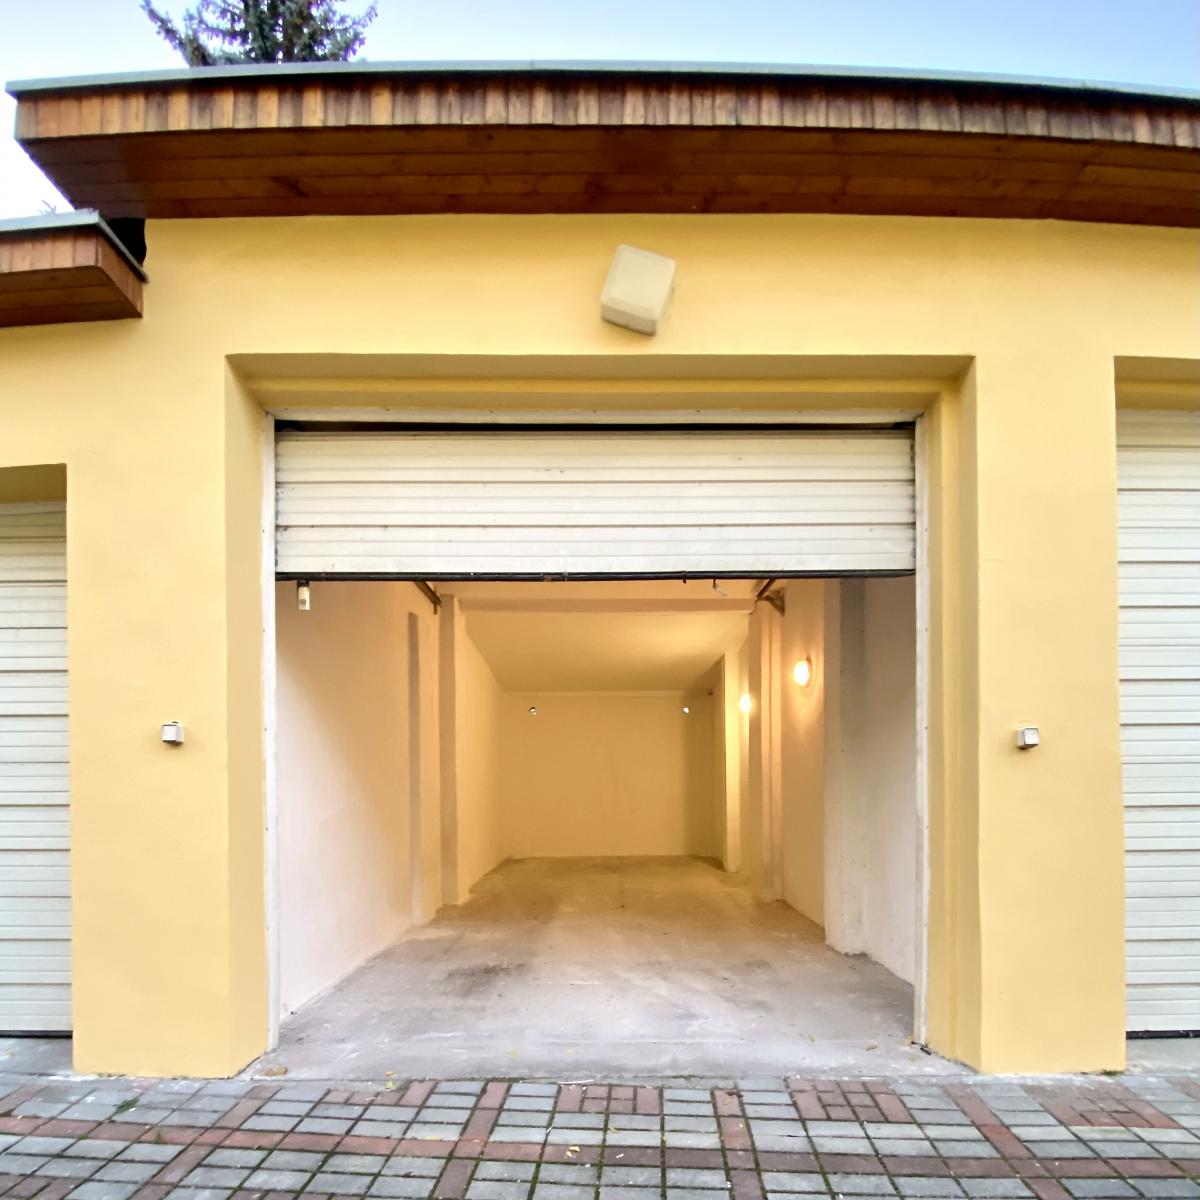 K pronájmu velká garáž 31m2 s elektřinou Česká Lípa Bulharská ulice